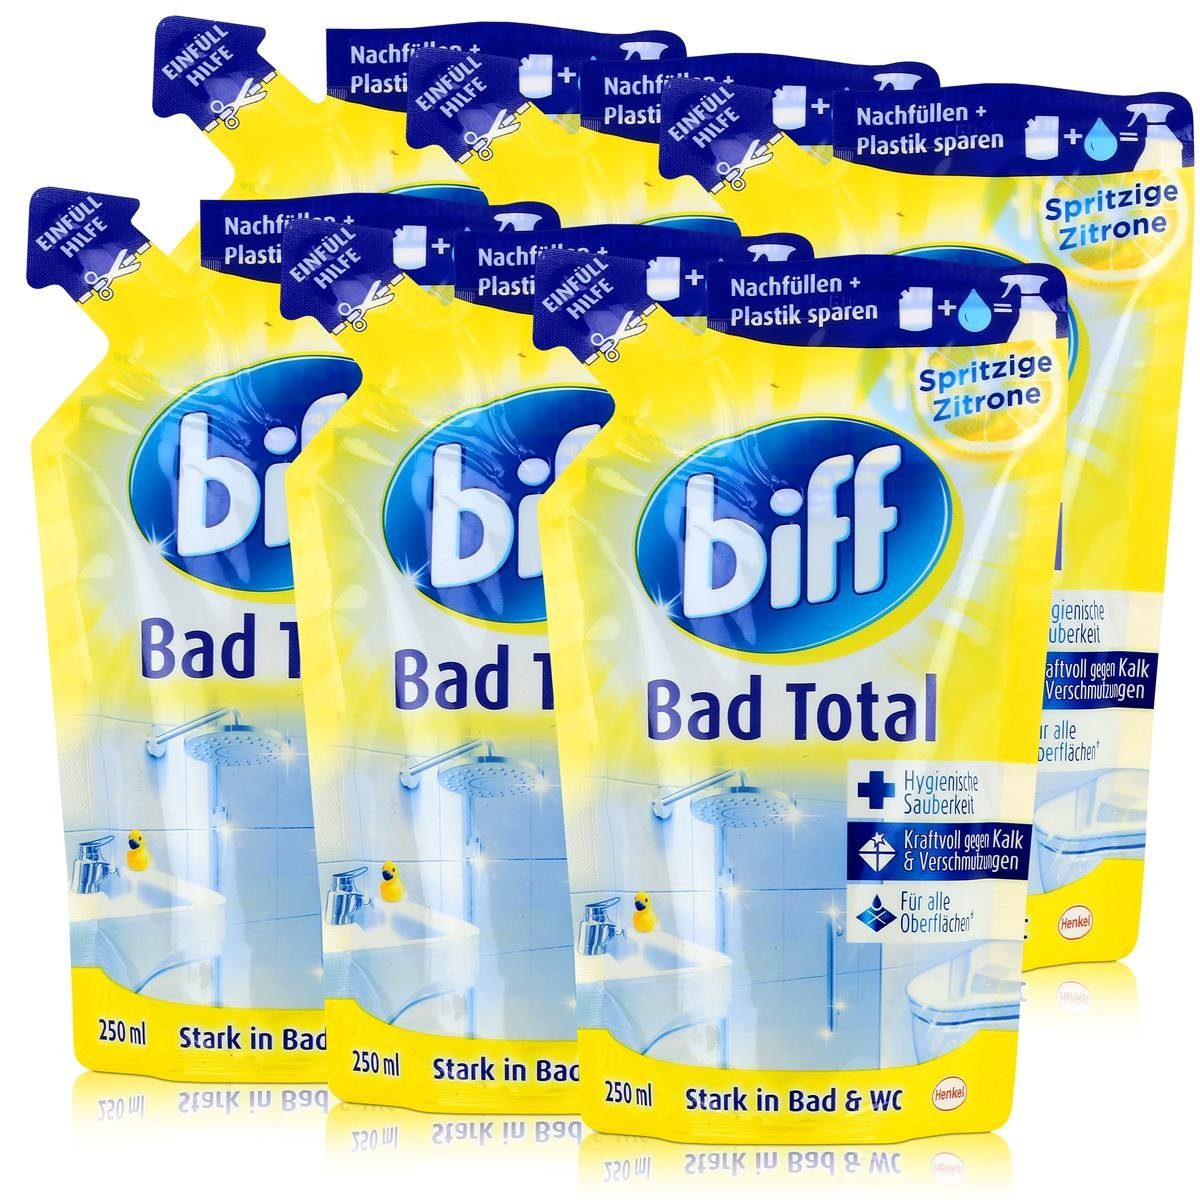 biff Biff Bad Total Zitrone Nachfüllbeutel 250ml - Kraftvoll gegen Kalk (6e Badreiniger